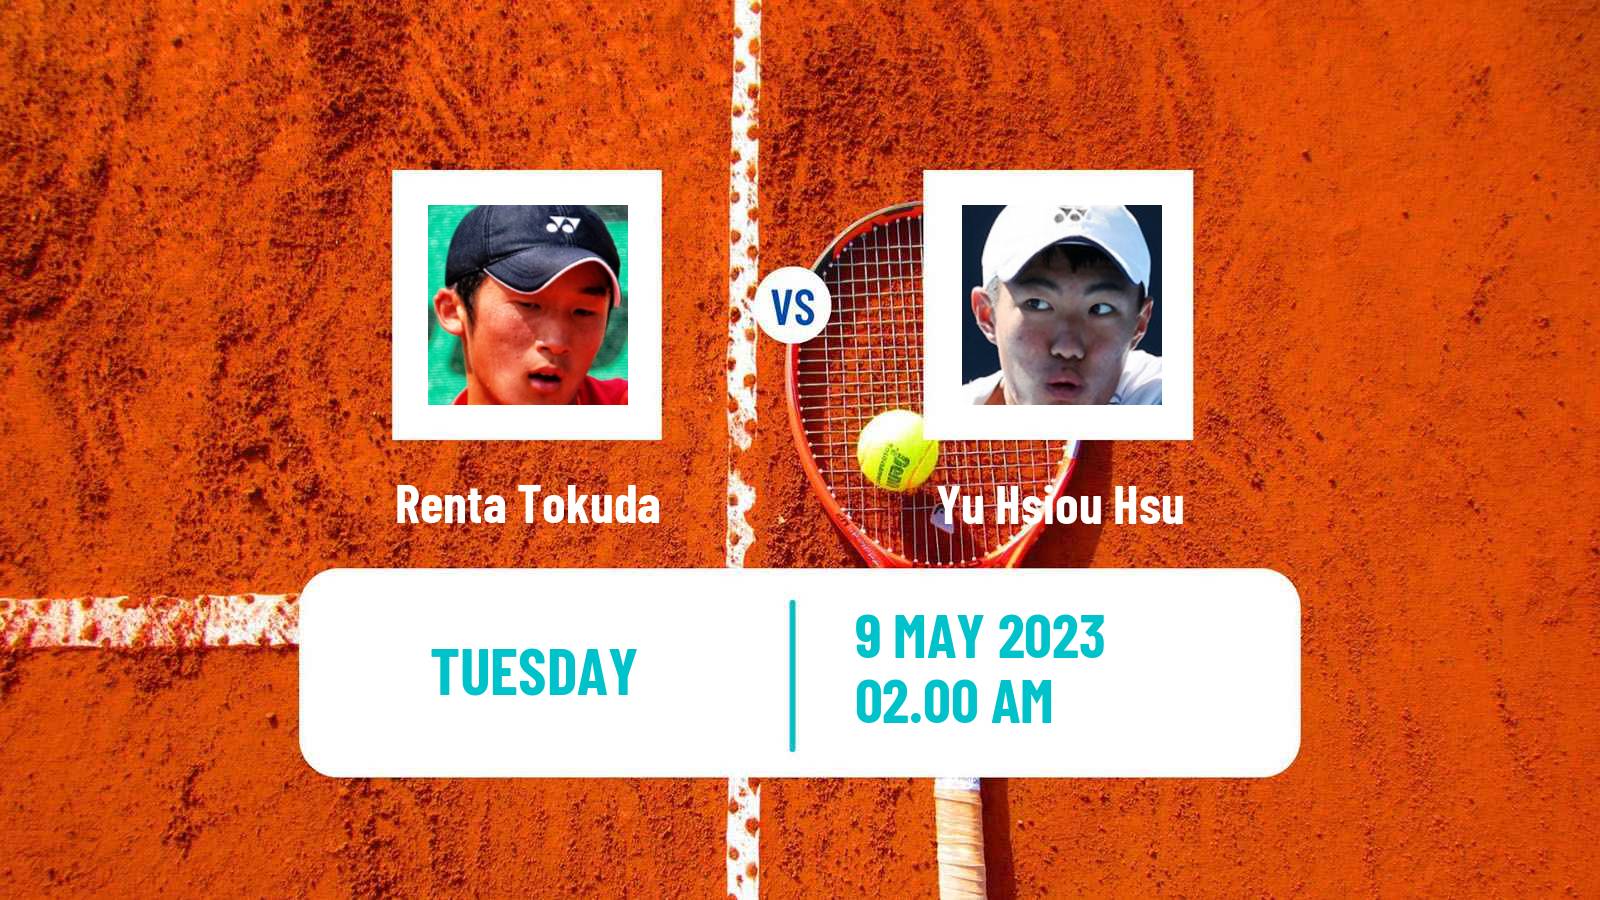 Tennis ATP Challenger Renta Tokuda - Yu Hsiou Hsu